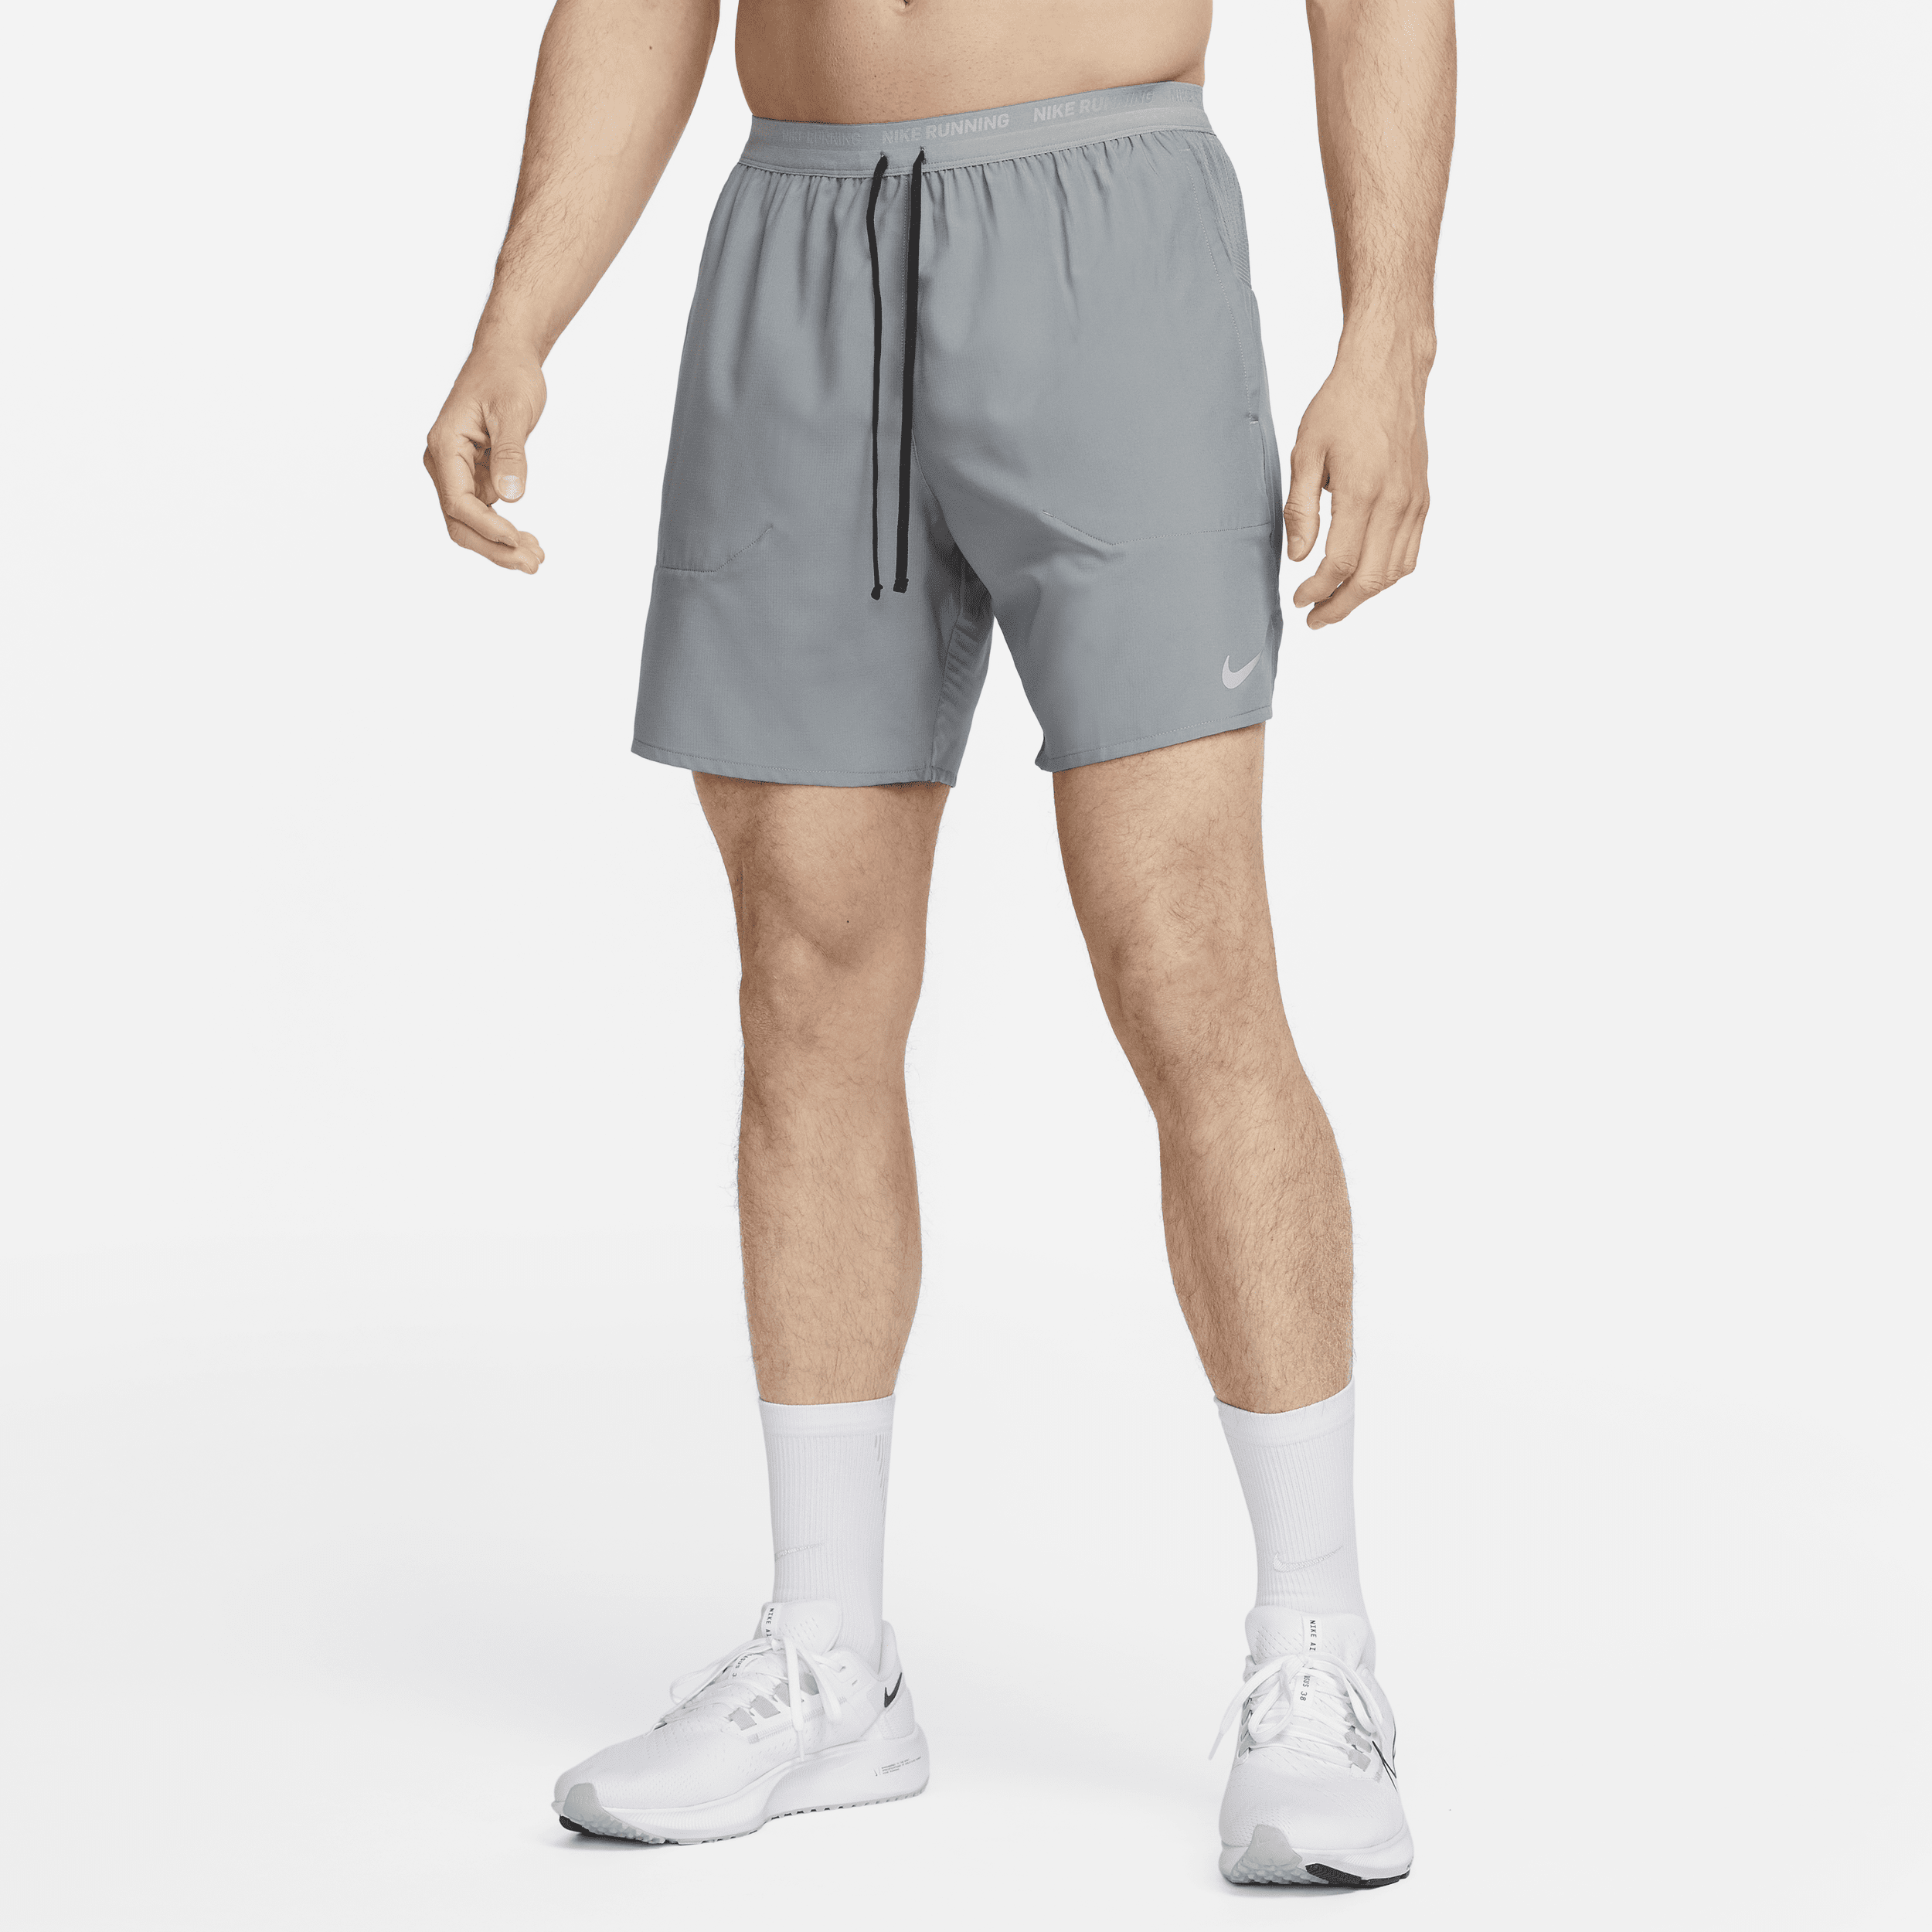 Shorts da running 18 cm con slip foderati Dri-FIT Nike Stride – Uomo - Grigio